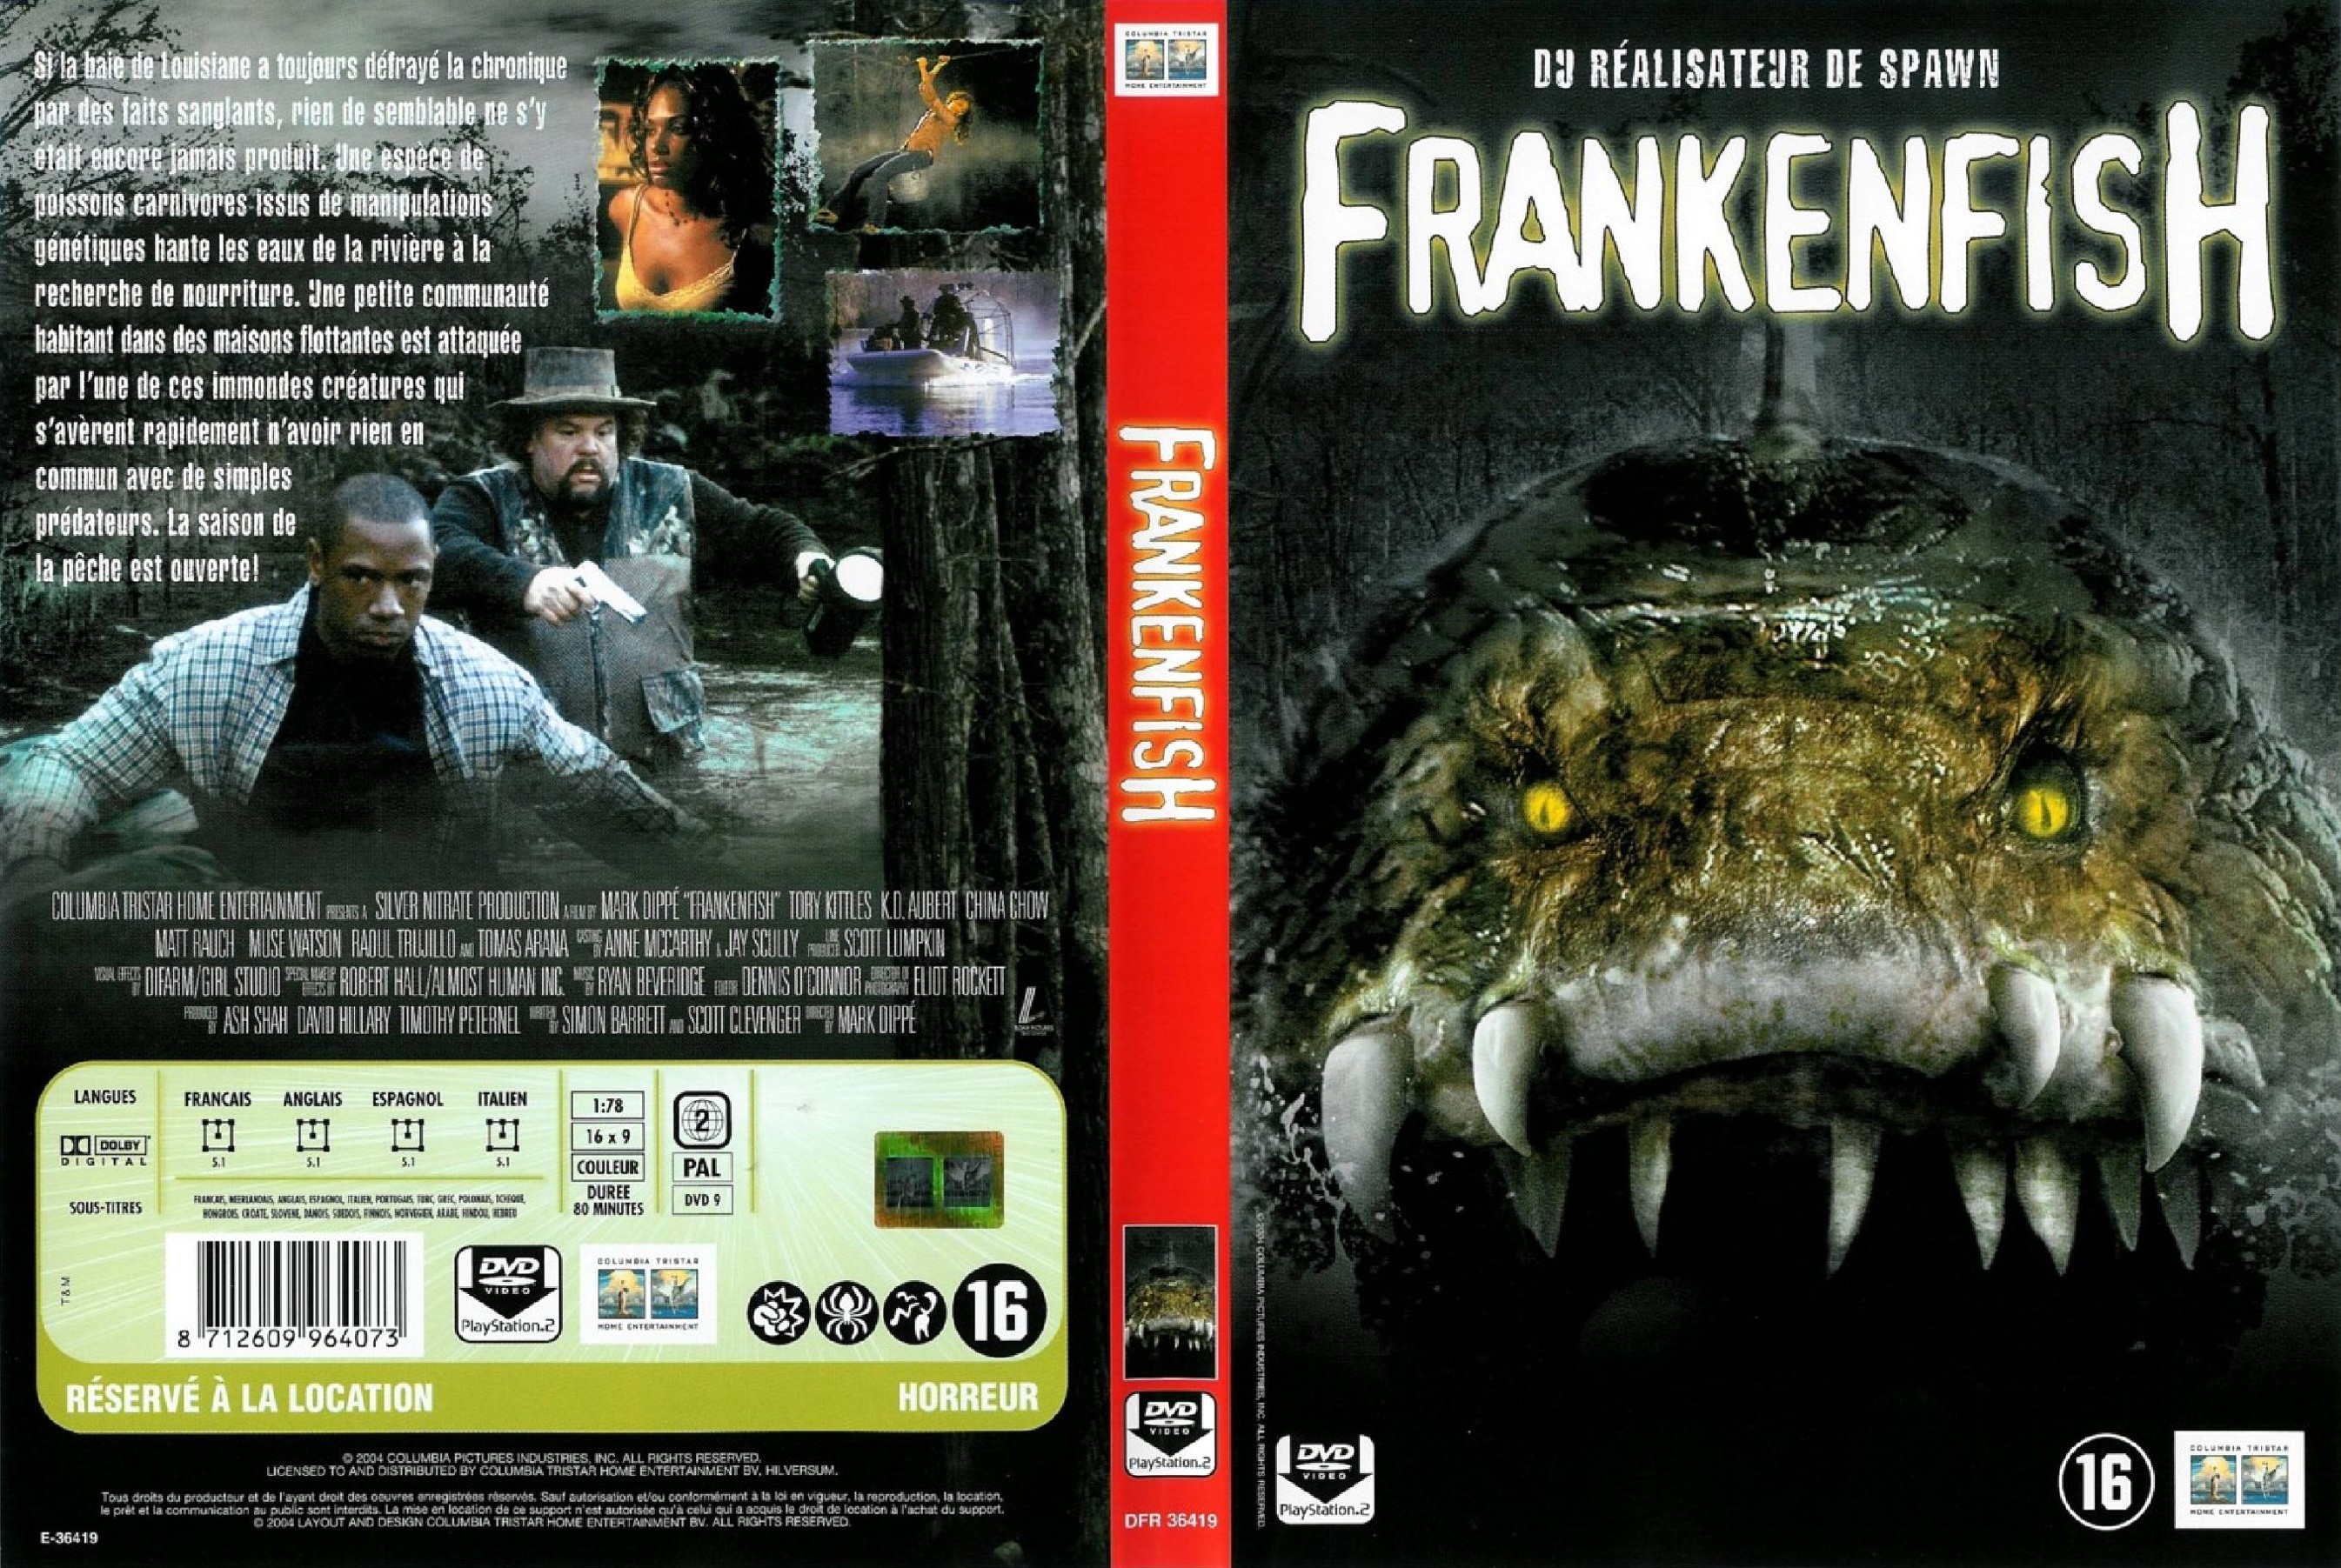 Jaquette DVD Frankenfish v3